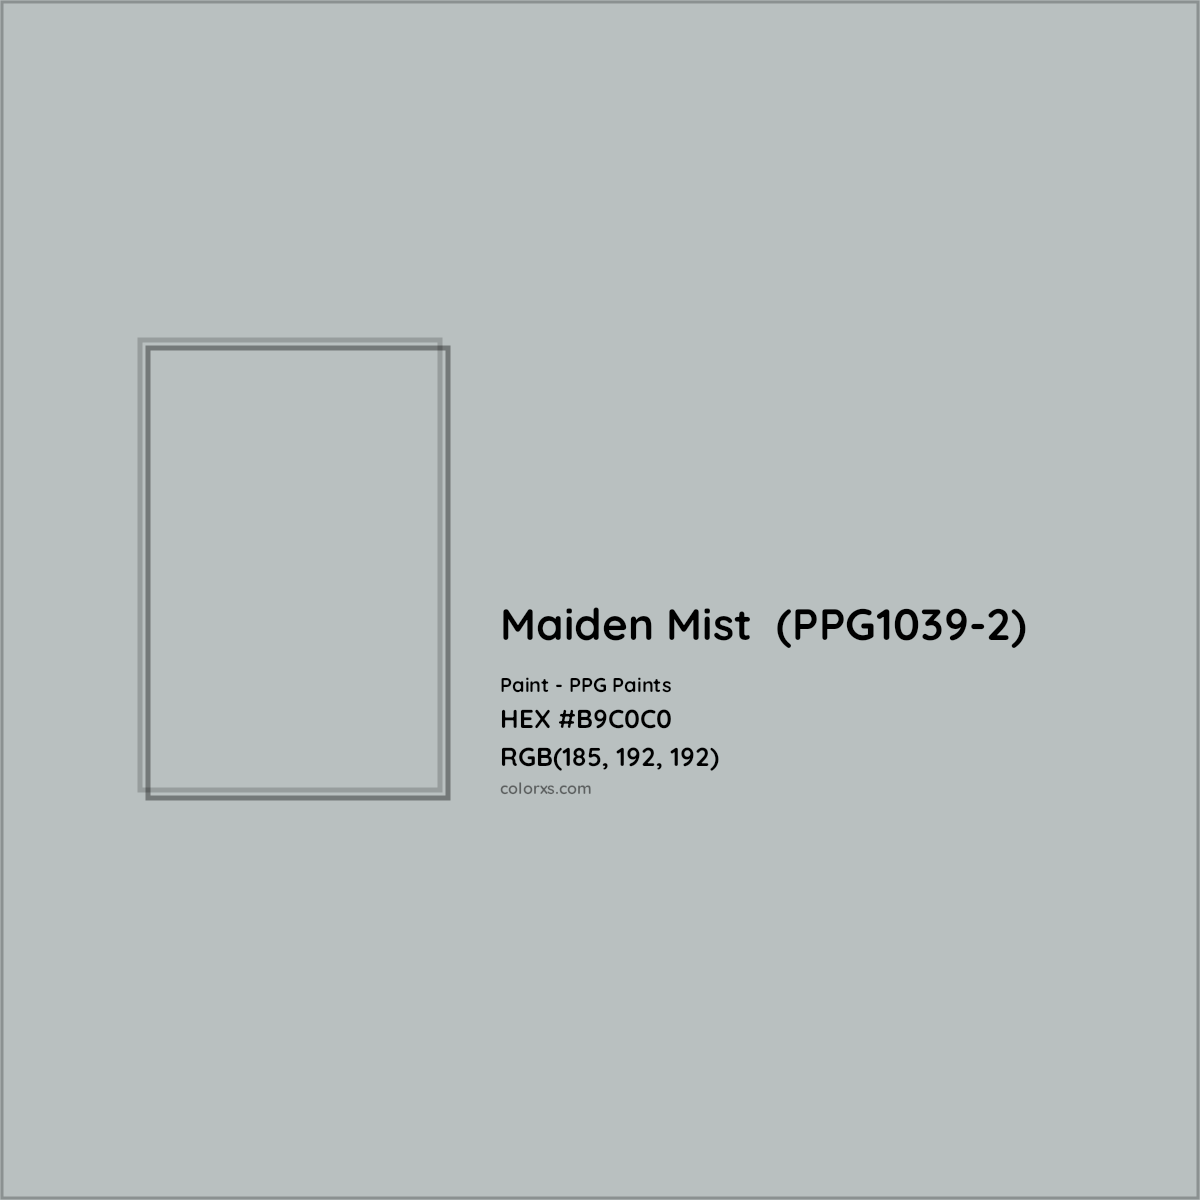 HEX #B9C0C0 Maiden Mist  (PPG1039-2) Paint PPG Paints - Color Code